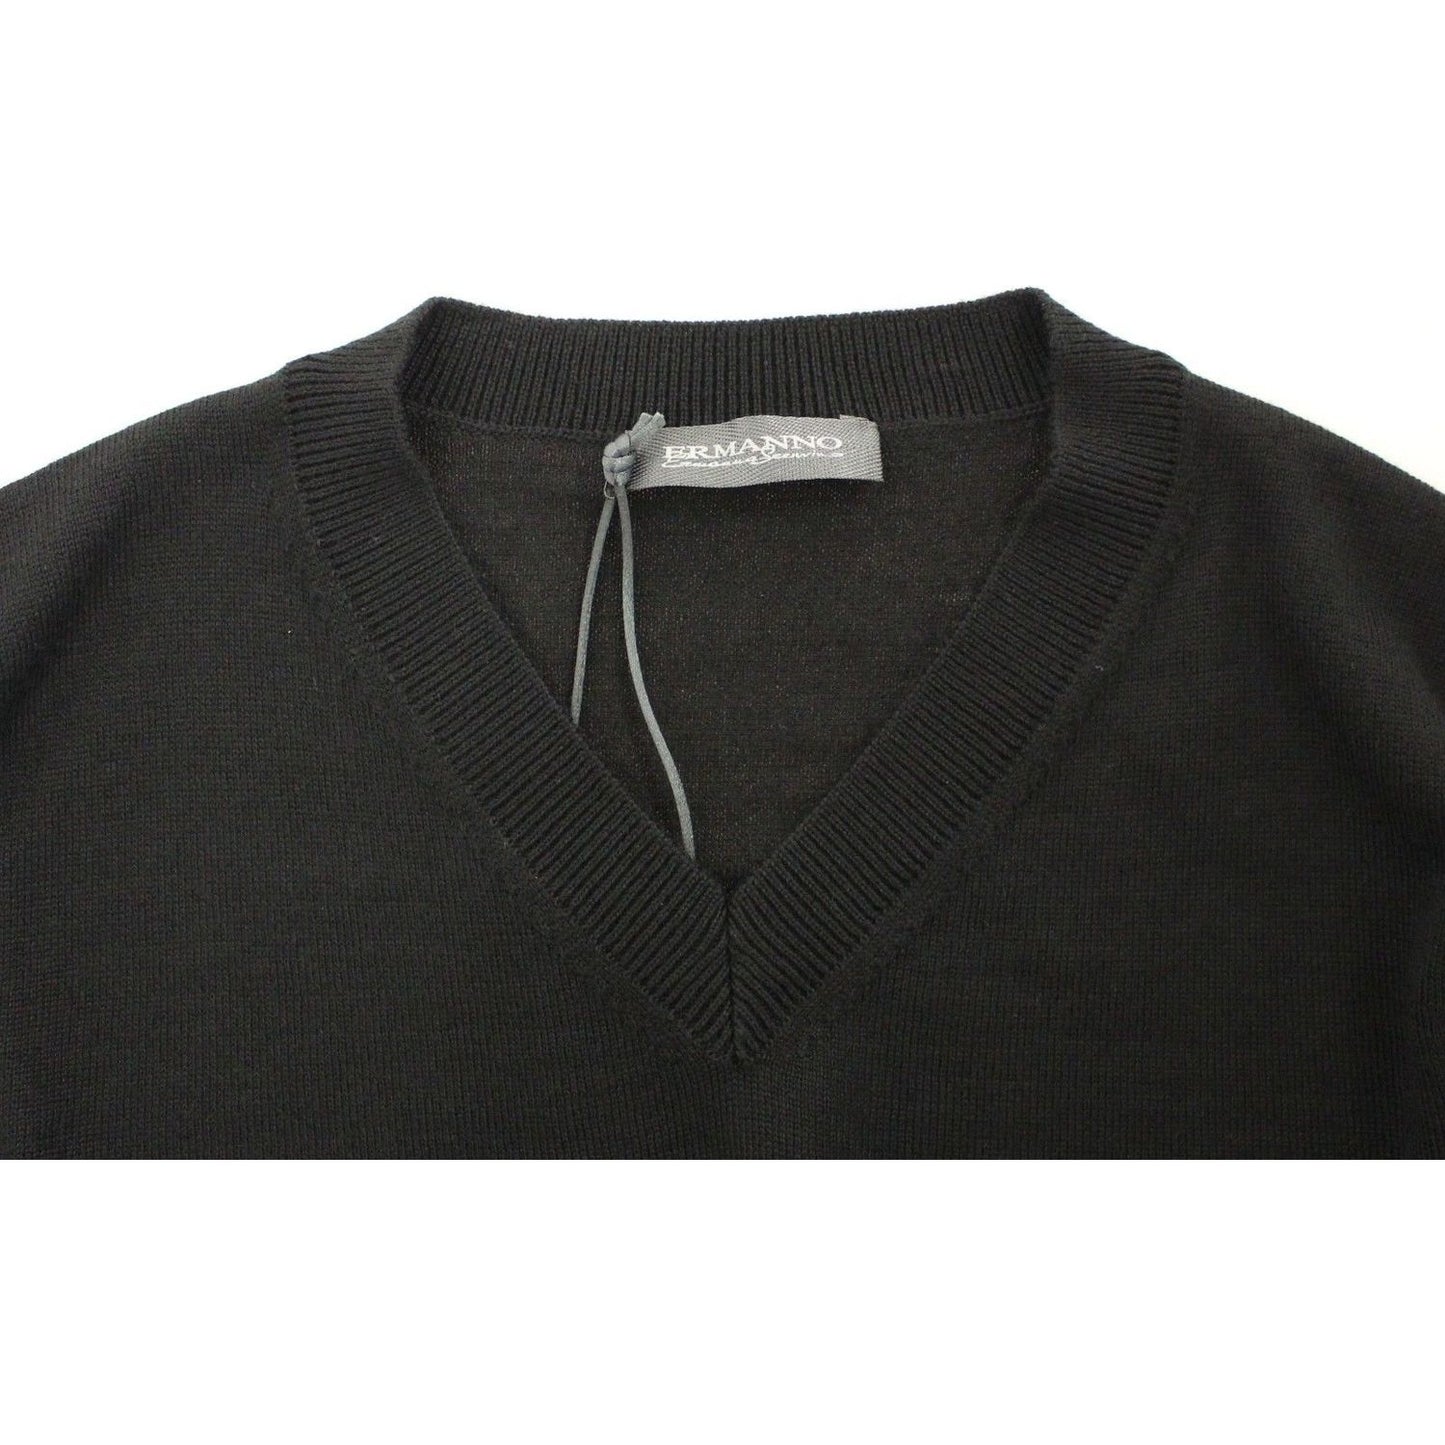 Ermanno Scervino Elegant Black V-Neck Wool Blend Sweater black-wool-blend-v-neck-pullover-sweater 37457-black-wool-blend-v-neck-pullover-sweater-5.jpg